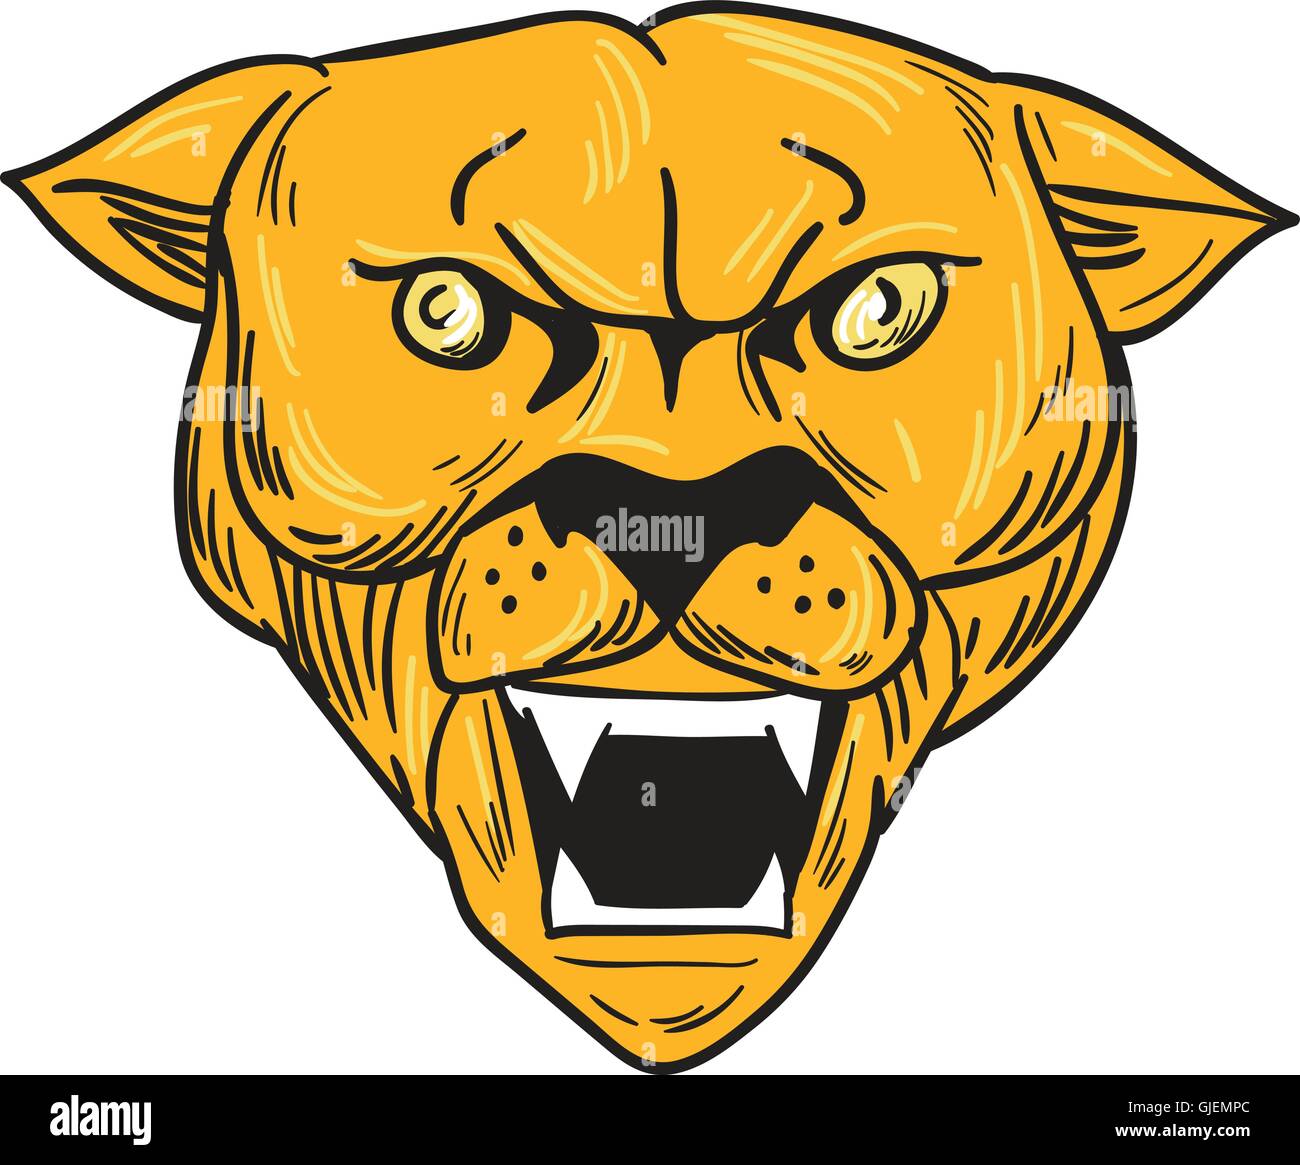 Zeichnung Skizze Stil Abbildung von einer wütenden Cougar Mountain Lion Kopf zeigt Zähne betrachtet von vorne am isolierten weißen Hintergrund. Stock Vektor